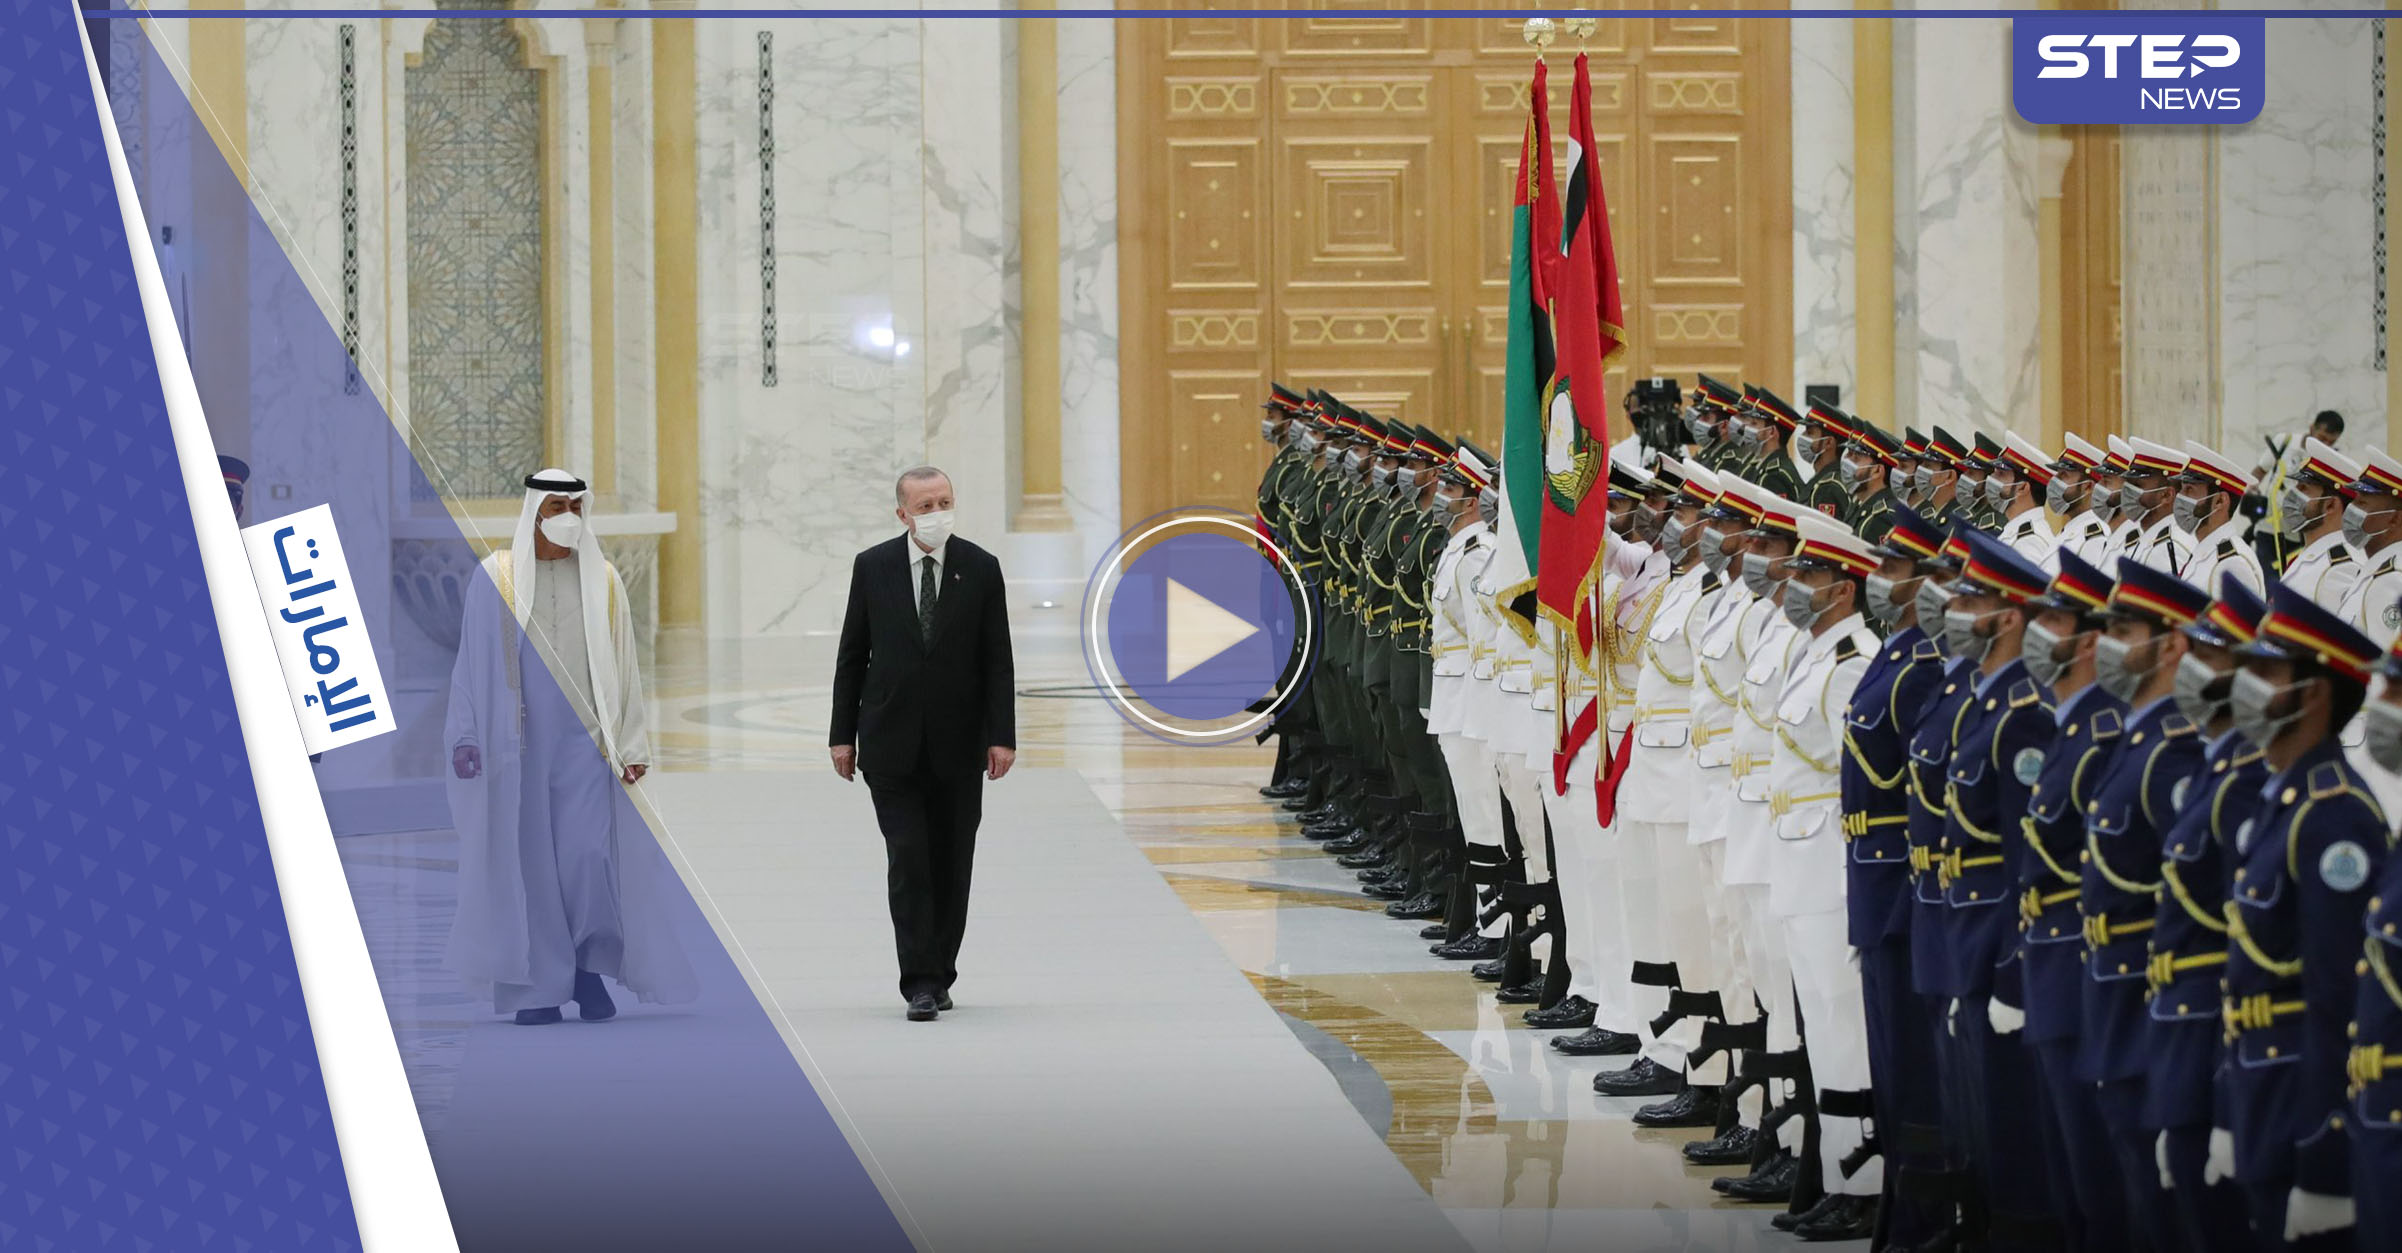 بالفيديو|| حسين الجسمي يغني بالتركية احتفاءً بزيارة أردوغان.. وقادة الإمارات يوقعون معه 13 اتفاقية